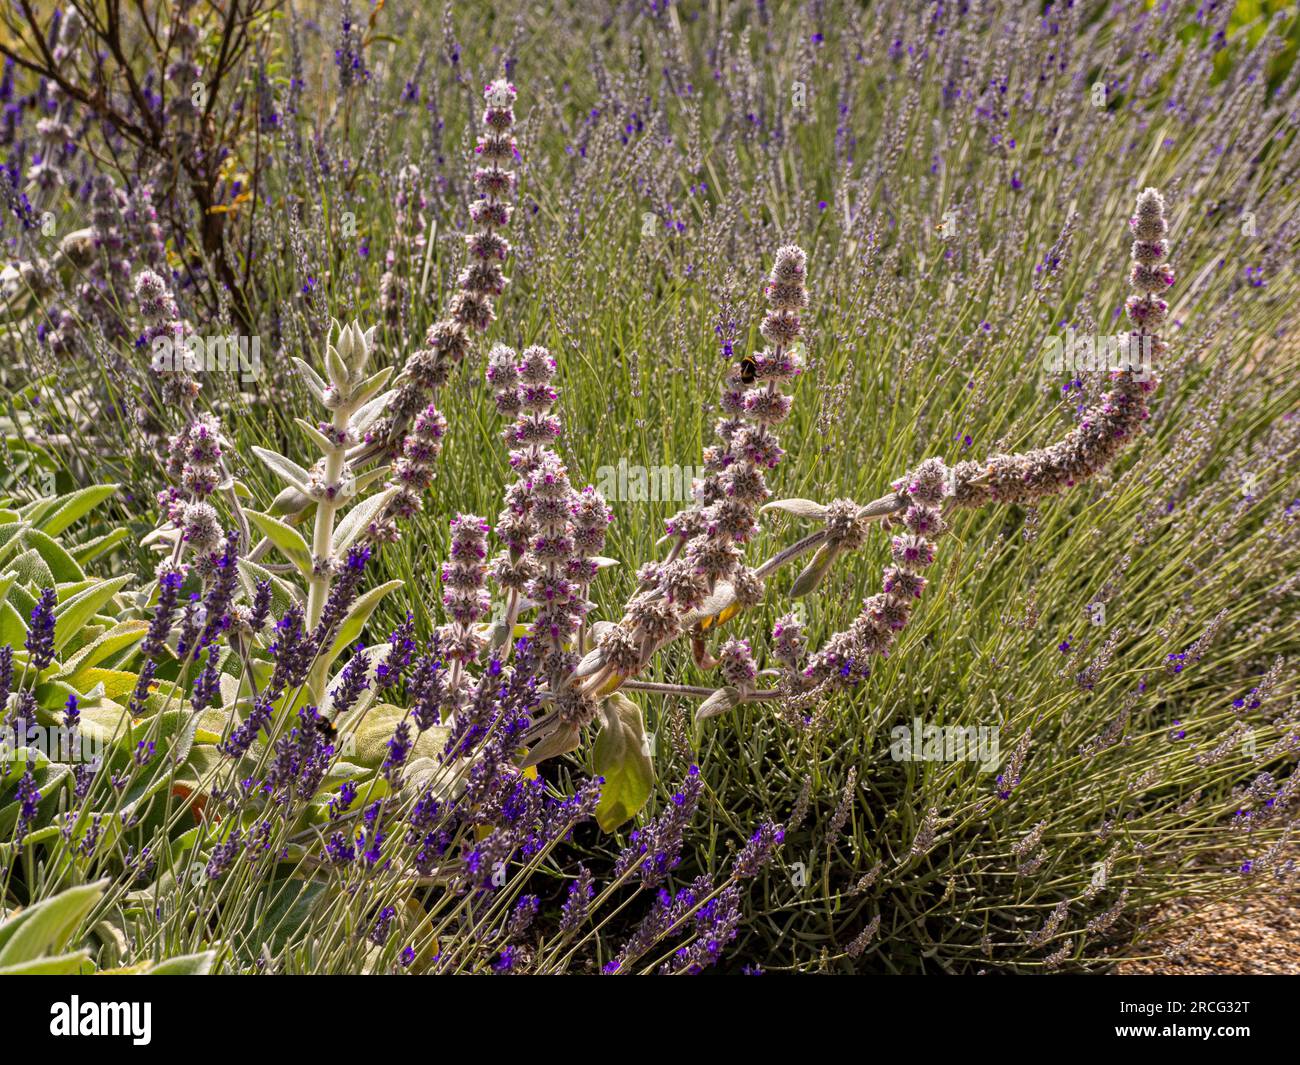 Dunkelrosa Blumen auf geschwungenen Stämmen von Stachys byzantina und die violetten Lavendelblumen, die im Sommer in einem Garten wachsen. Stockfoto